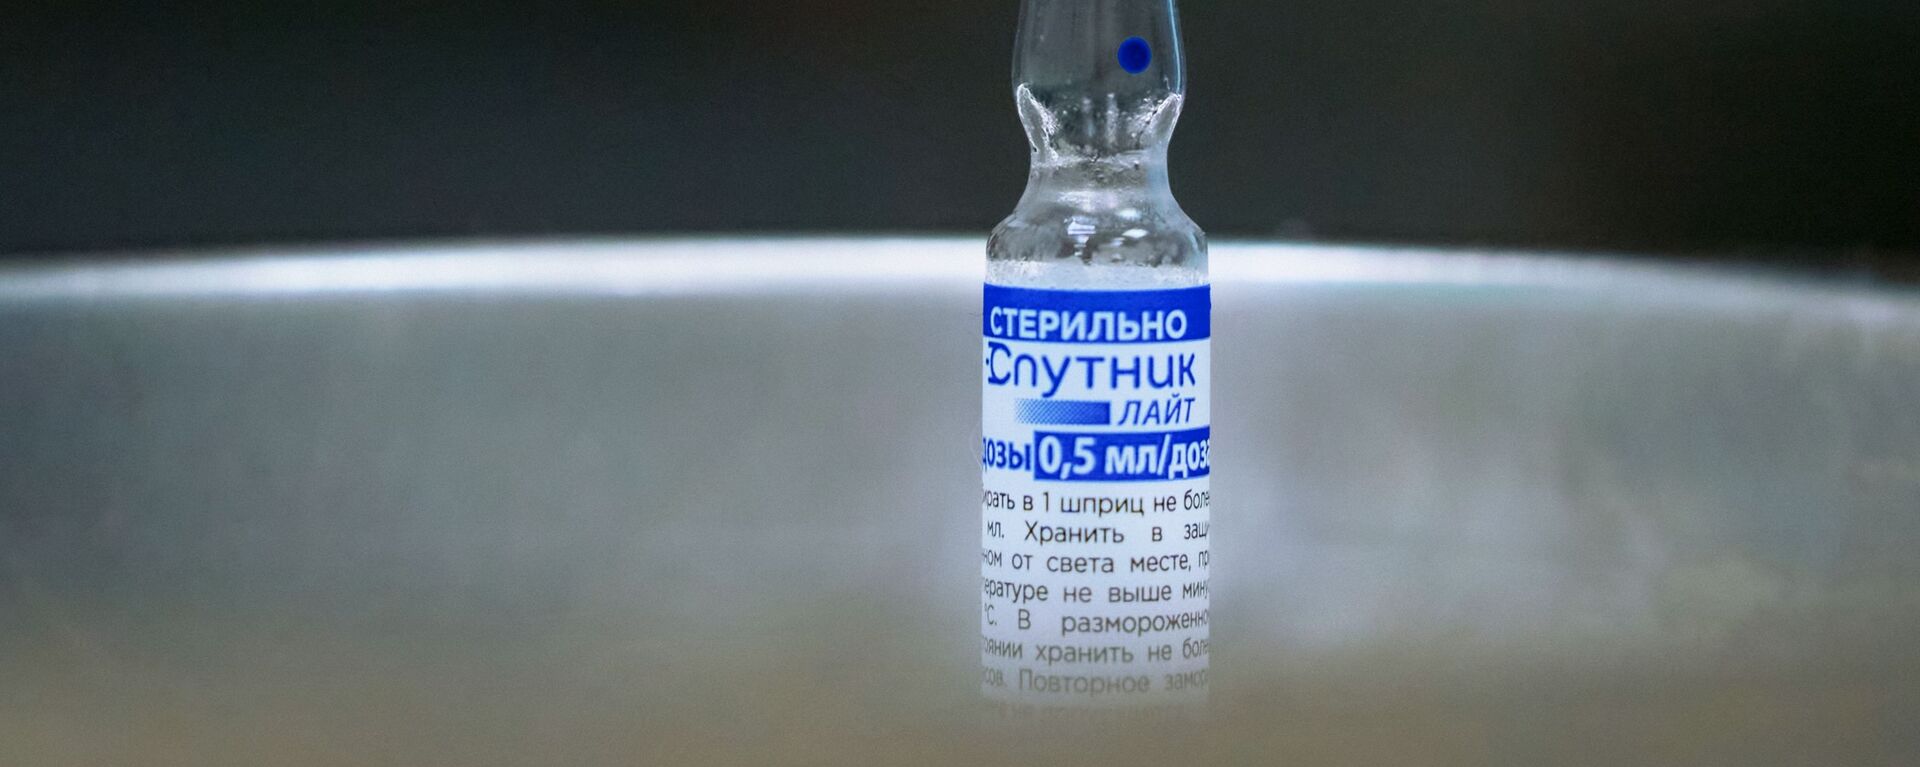 امارات استفاده از واکسن روسی اسپوتنیک لایت را تأیید کرد - اسپوتنیک افغانستان  , 1920, 06.10.2021